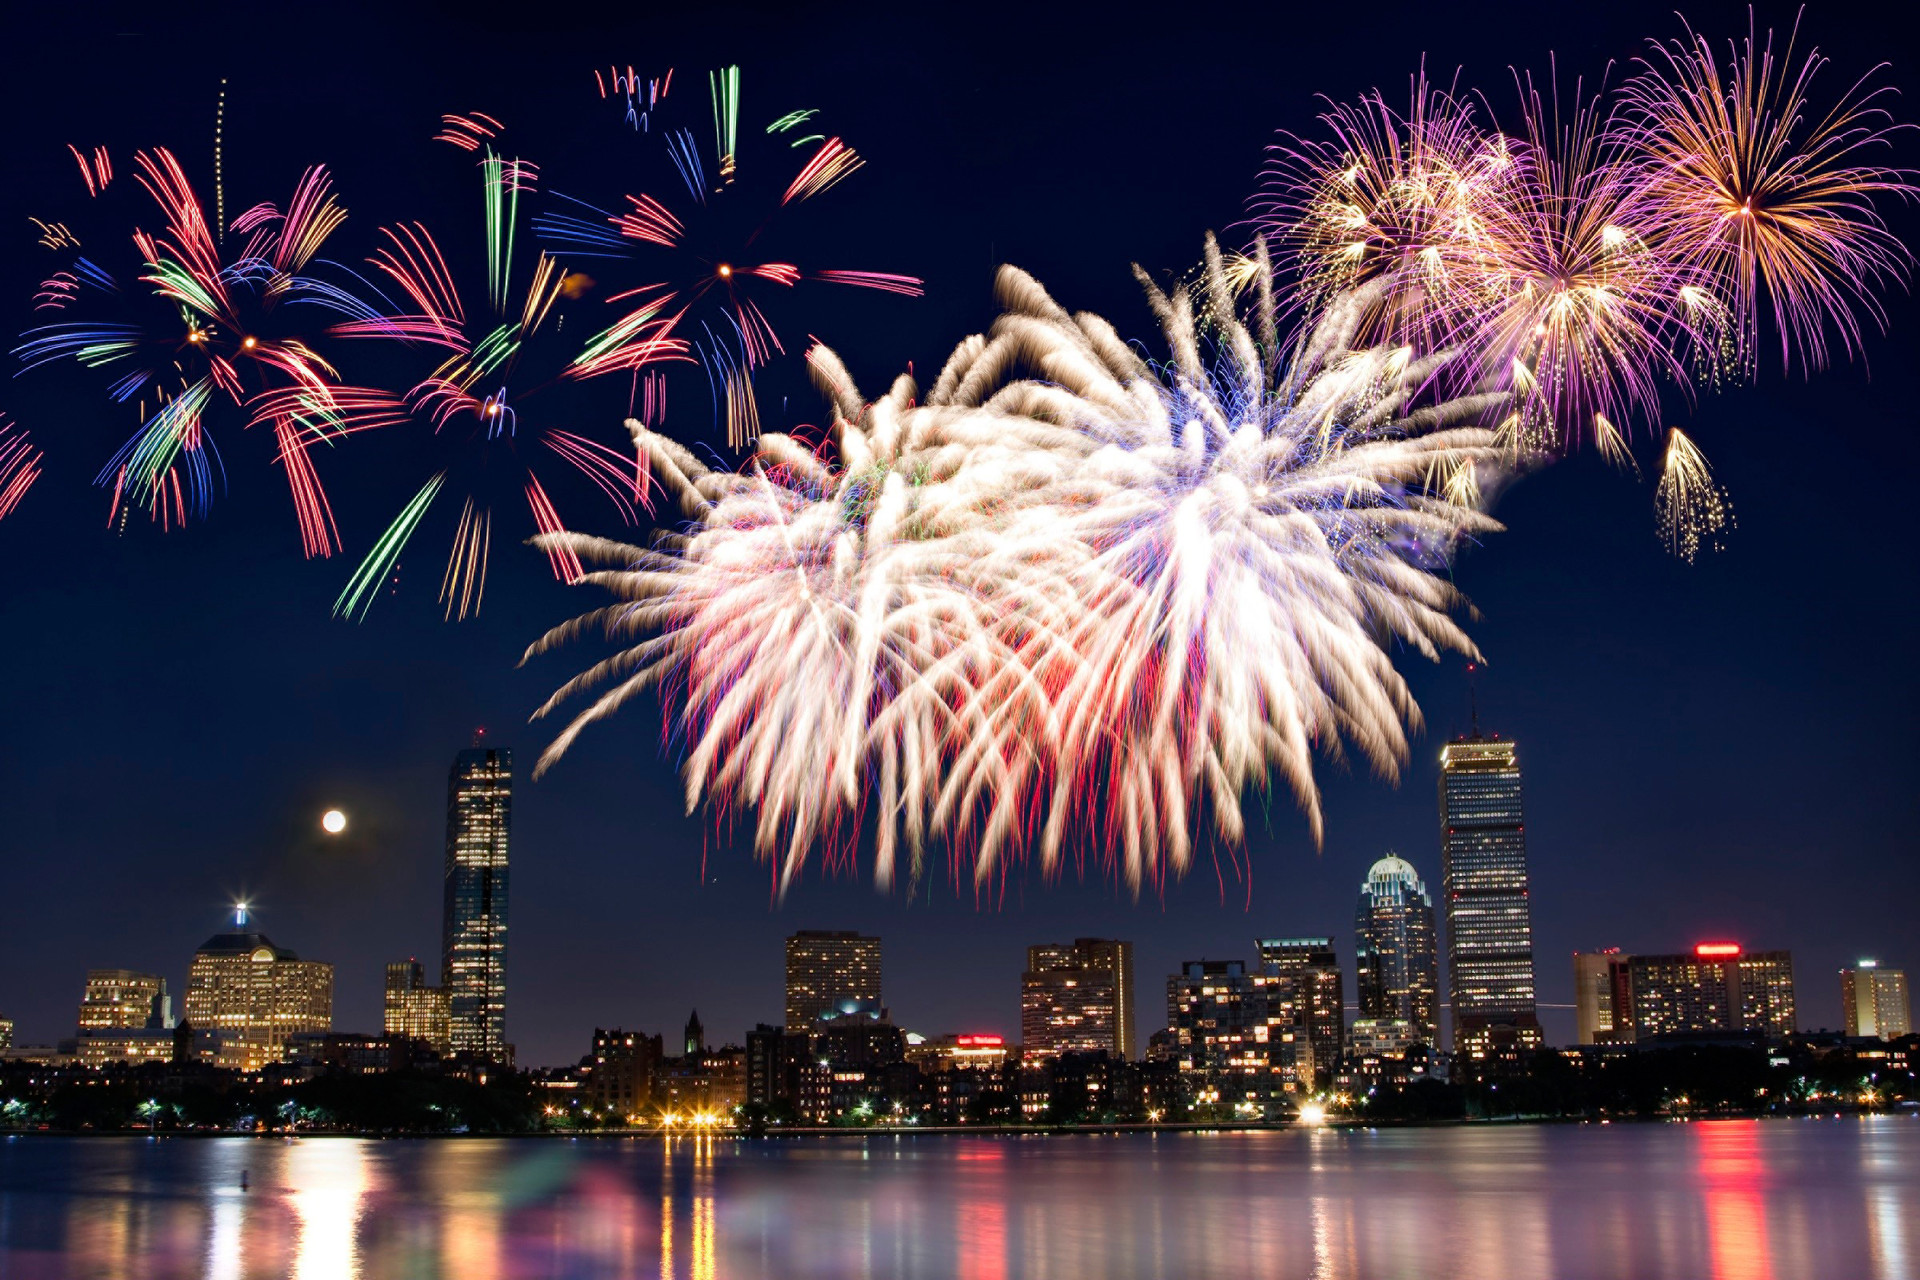 Fireworks over Boston - Four Seasons Boston 